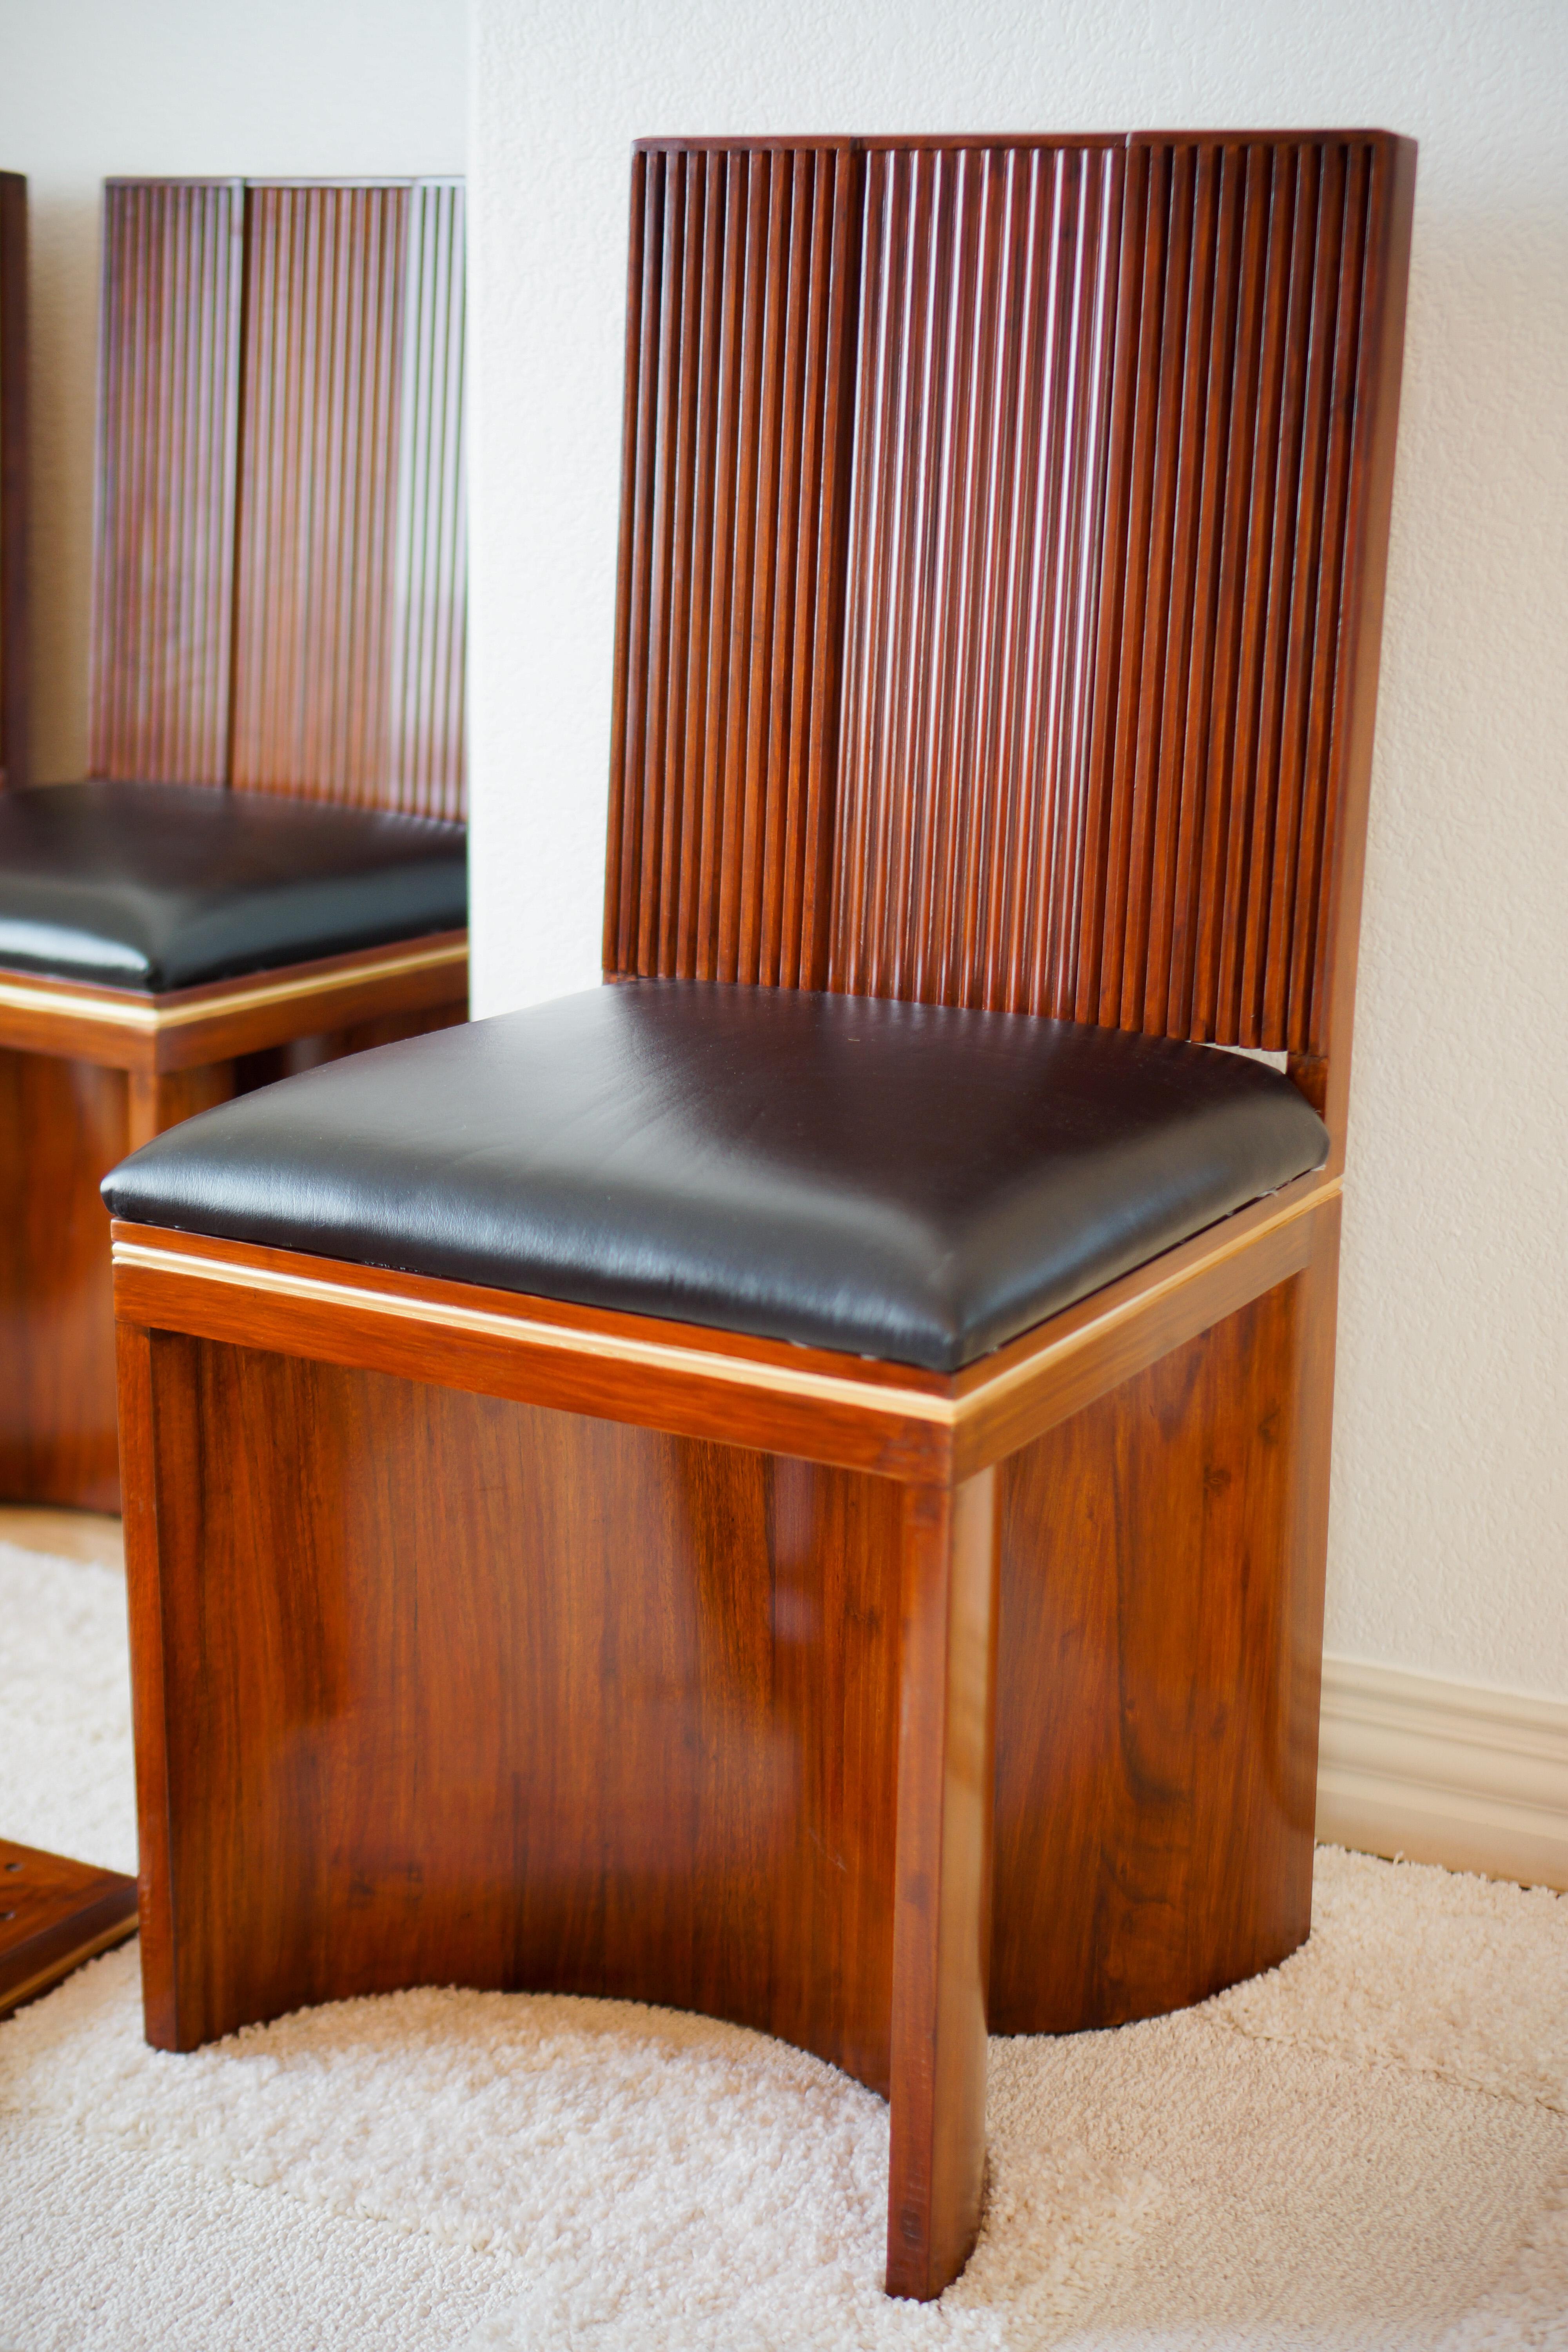 Wir stellen den exquisiten Vorago-Stuhl vor: Ein luxuriöses Meisterwerk

Treten Sie ein in die Welt der Opulenz mit dem Vorago Chair - eine wahre Verkörperung von Luxus und avantgardistischem Design. Dieser atemberaubende Stuhl hat ein